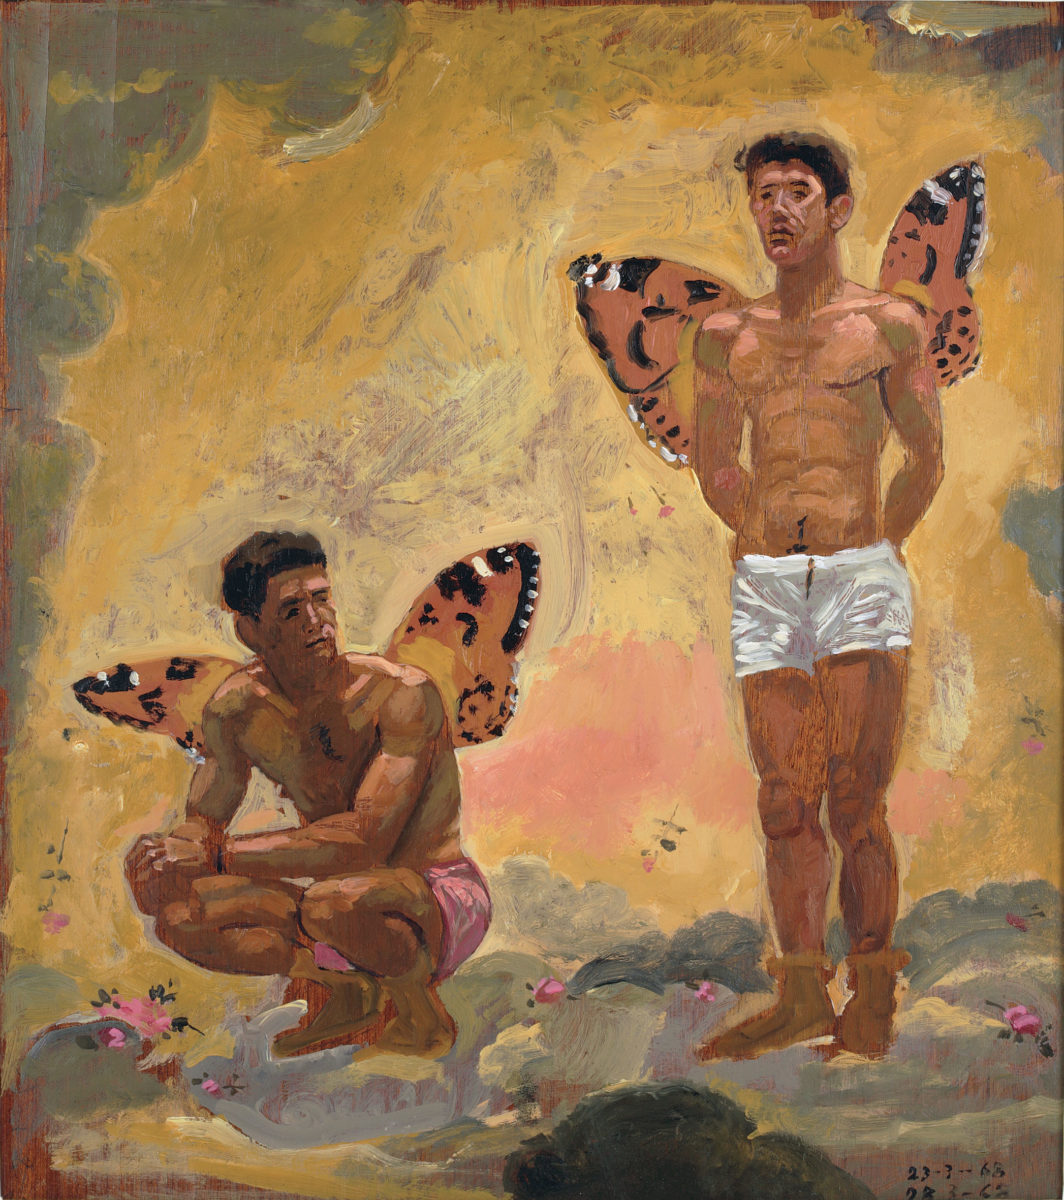 Γιάννης Τσαρούχης, «Δύο άνδρες με φτερά πεταλούδας», 1968. Λάδι σε καπλαμά, 44,5x39,4 εκ. Ίδρυμα Γιάννη Τσαρούχη, αρ. ευρ. 631.